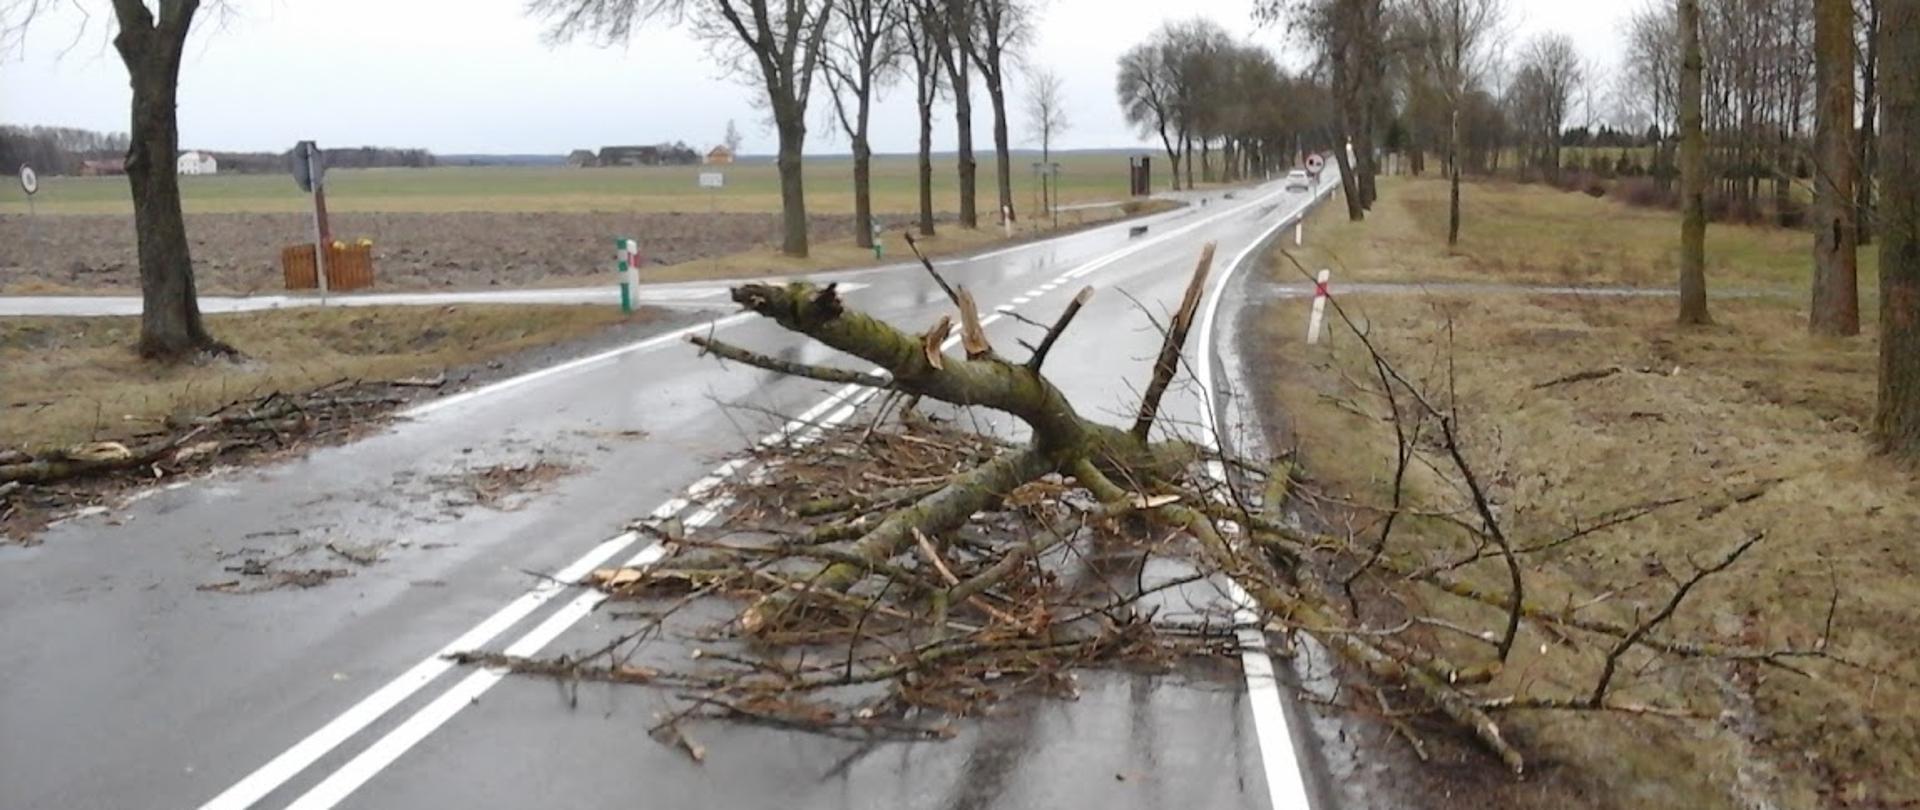 Złamany konar drzewa leżący na jezdni blokuje ruch na drodze.